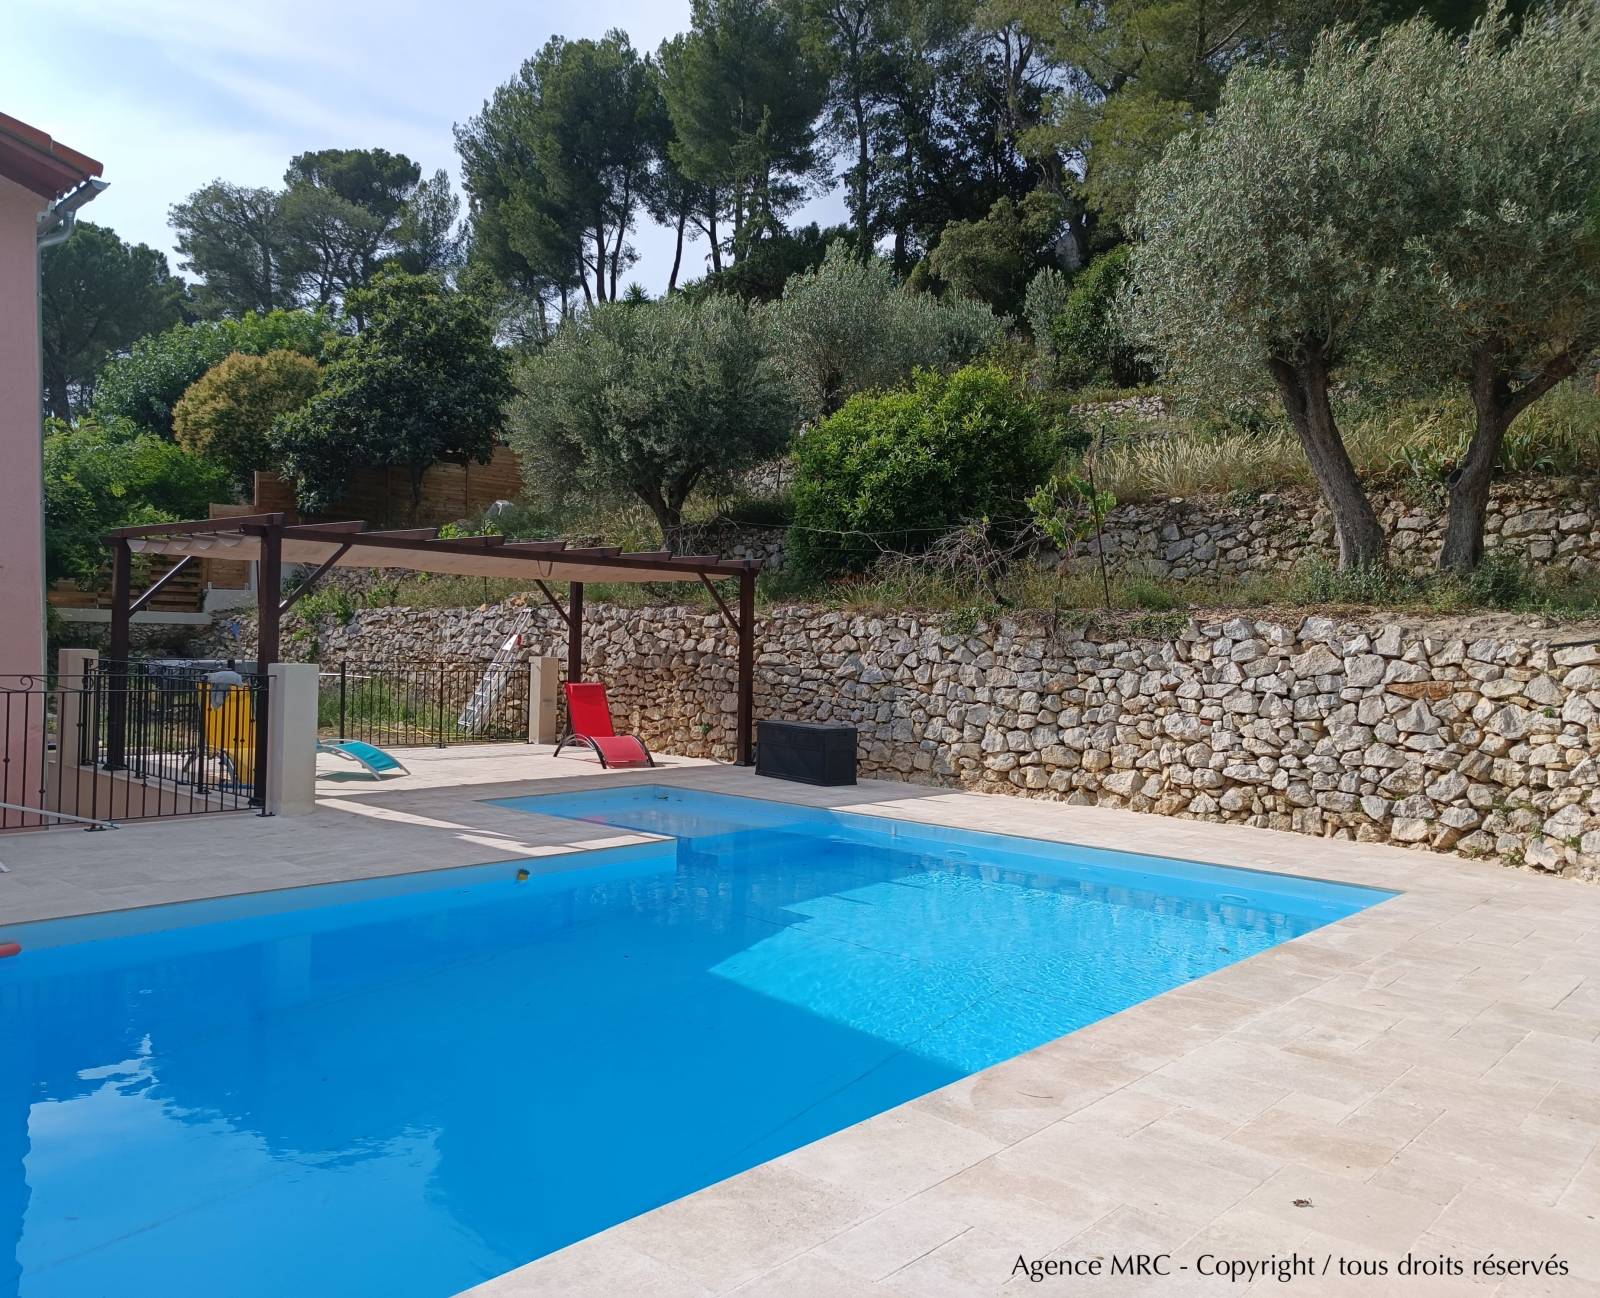 Création d'un jardin avec piscine et terrasses bois aux Marseille : notre mission d'architecte paysagiste